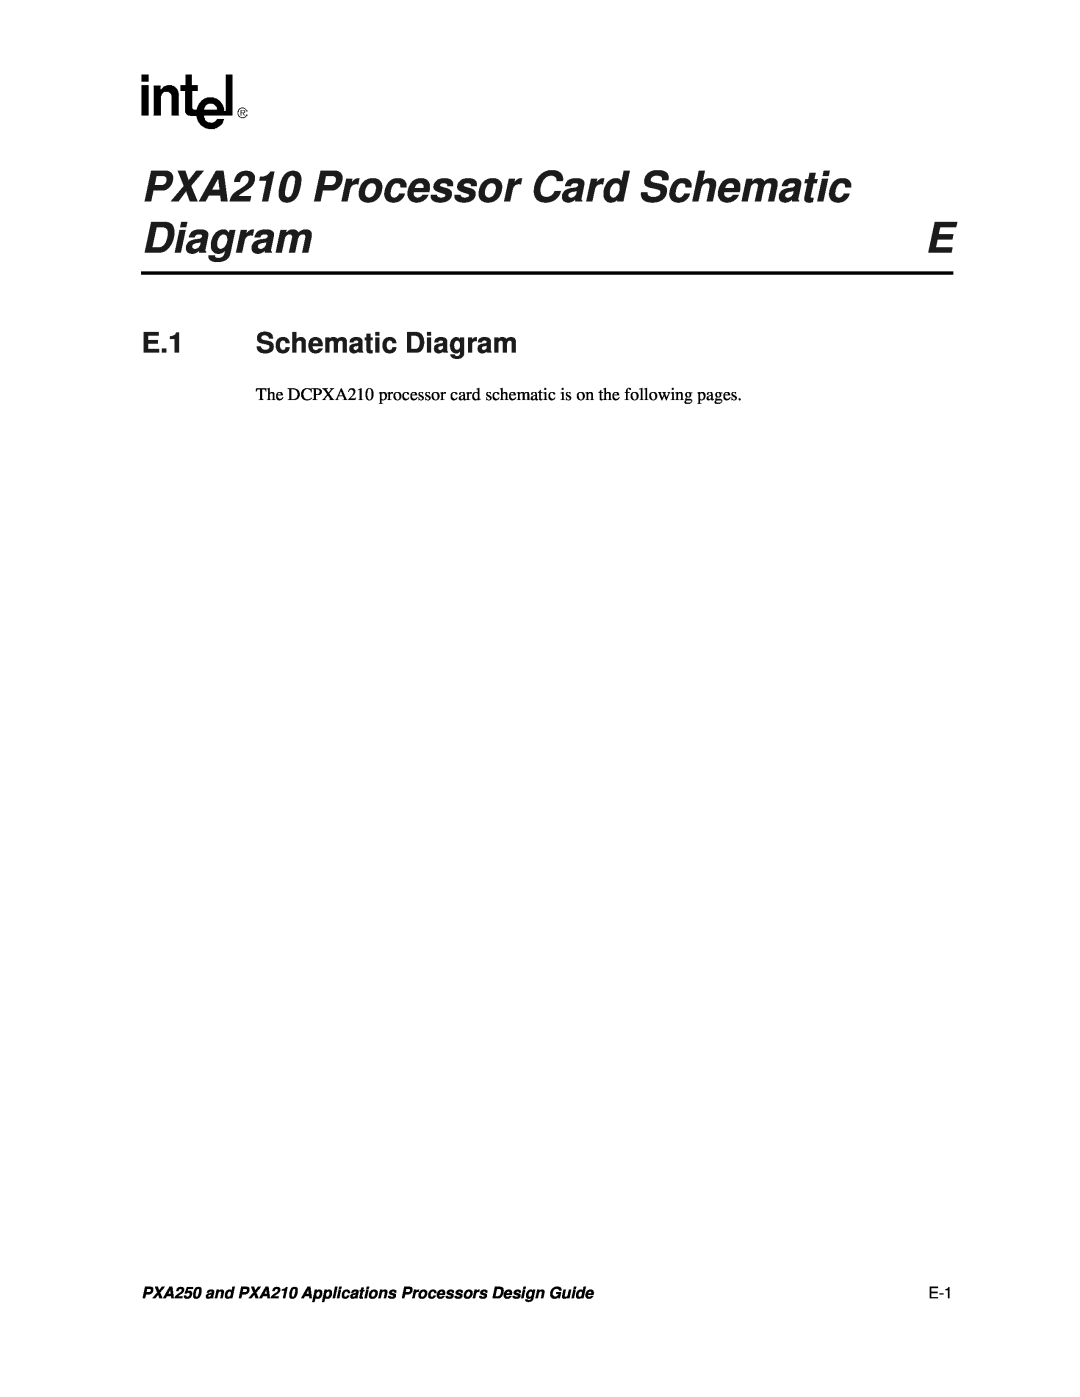 Intel PXA250 and PXA210 manual PXA210 Processor Card Schematic, E.1 Schematic Diagram 